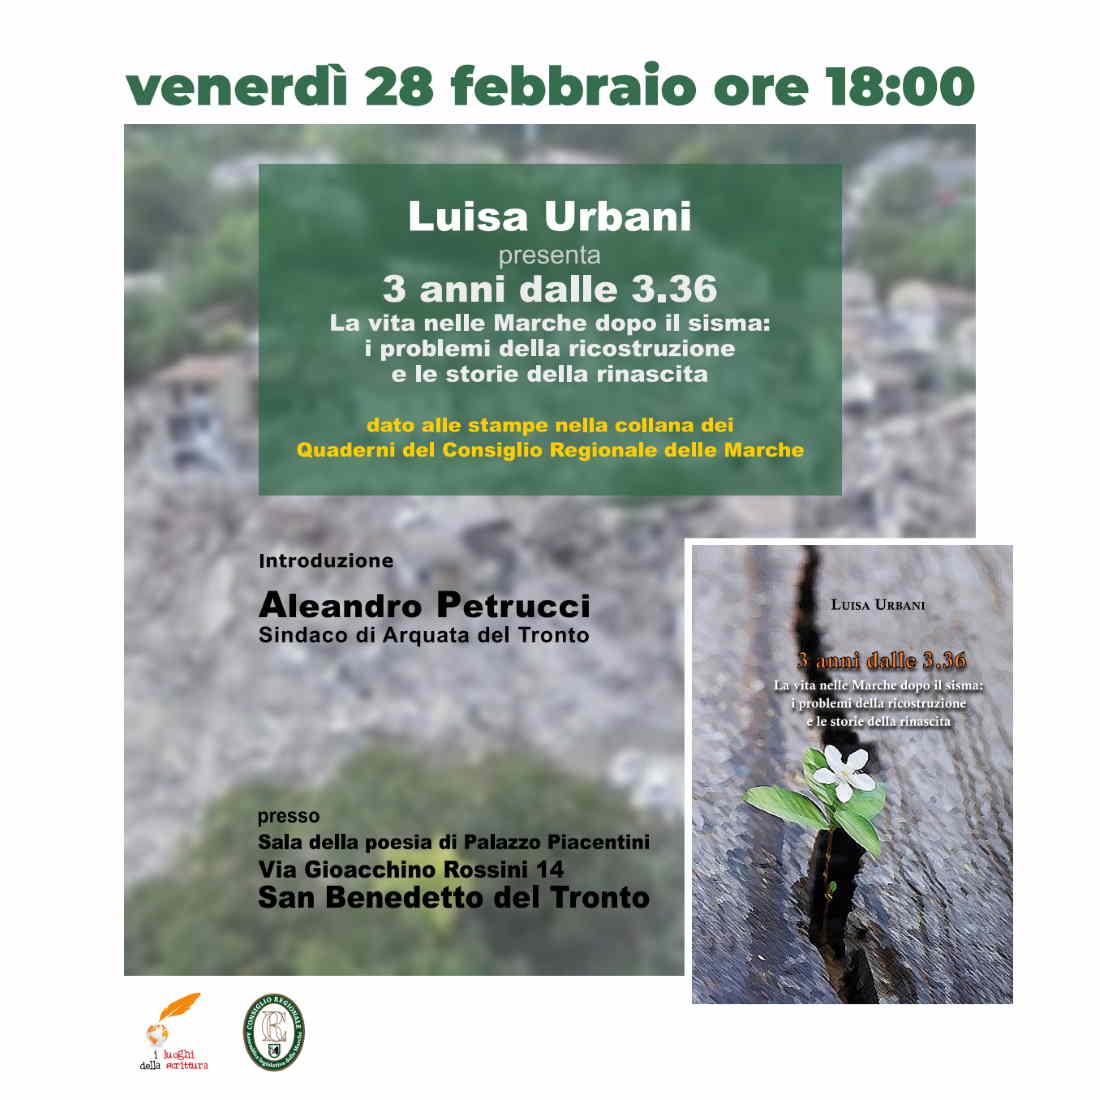 Luisa Urbani, “3 anni dalle 3.36” (presentazione rinviata)